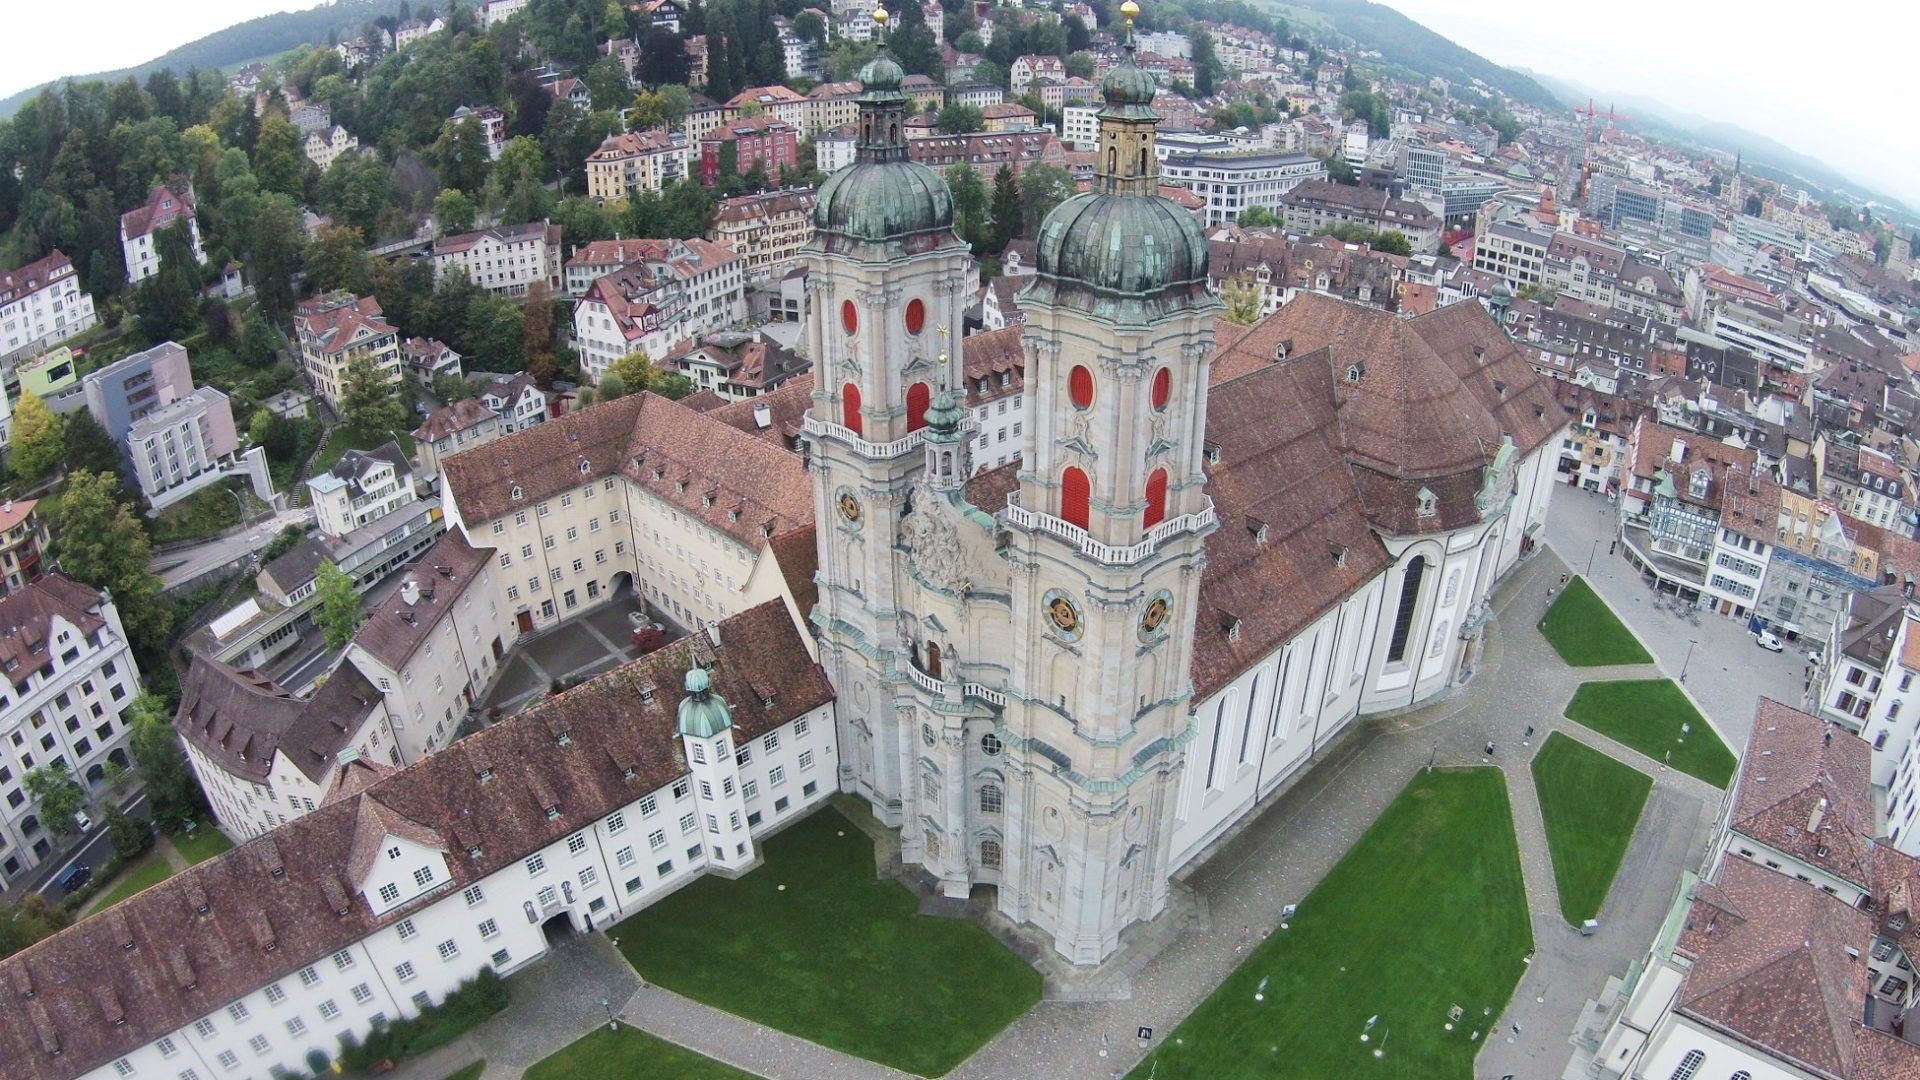 Kathedrale St. Gallen mit Verwaltungsgebäuden des Bistums.